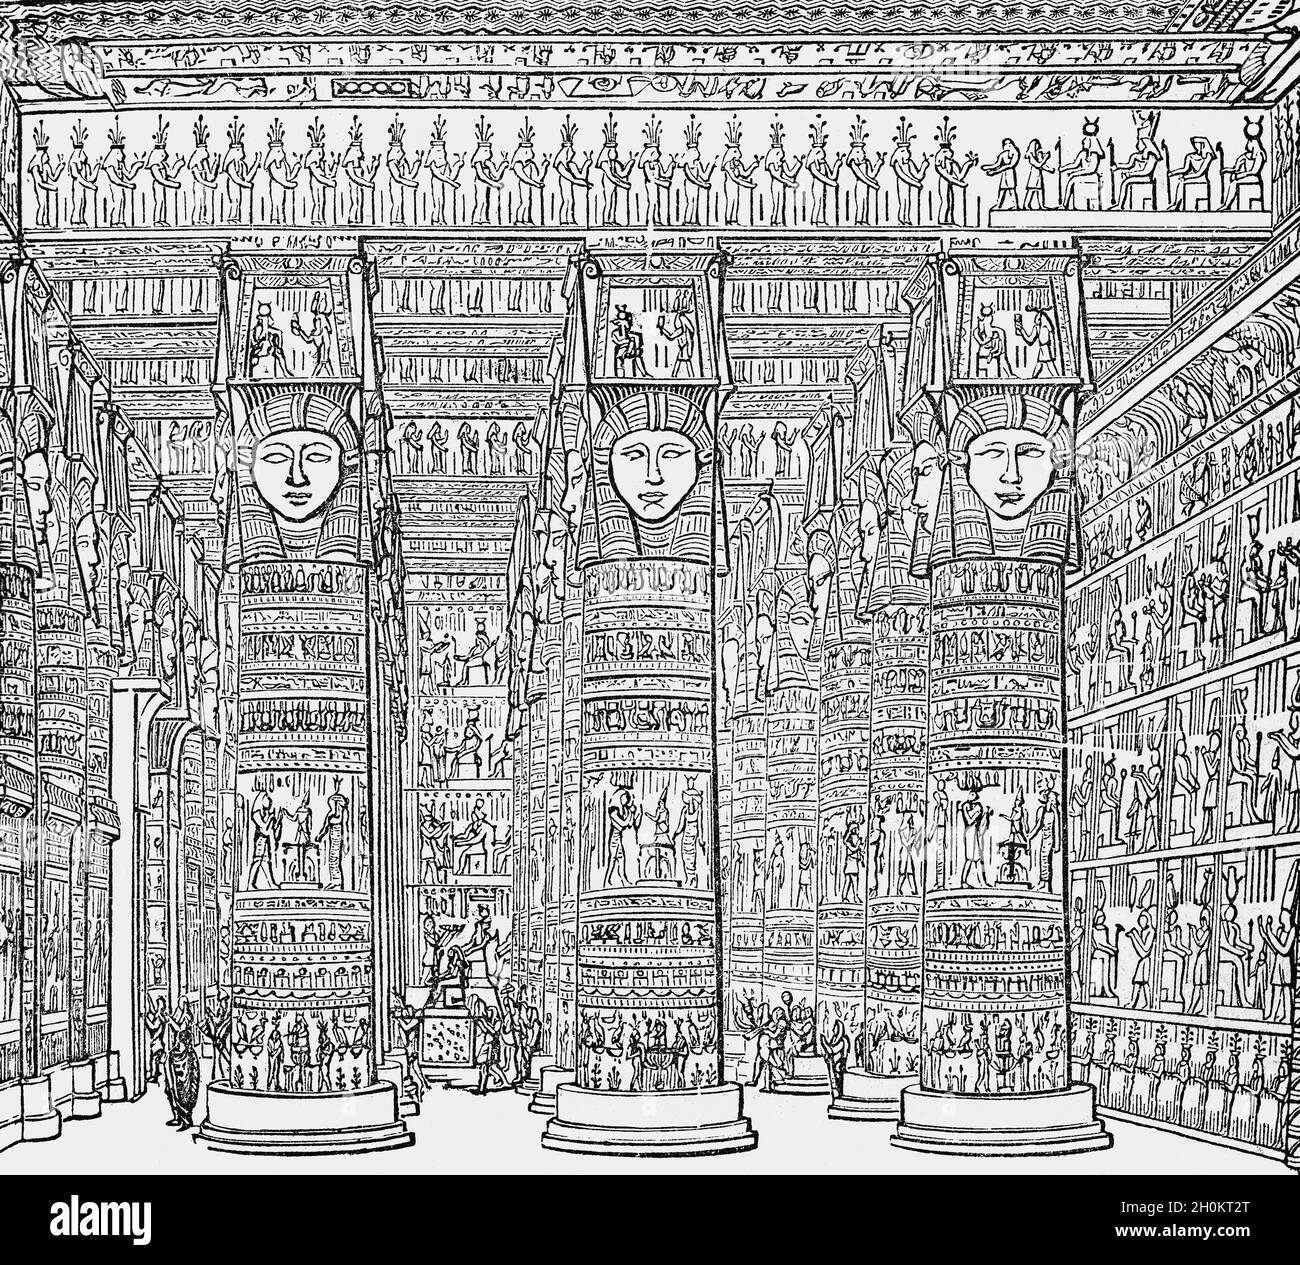 Eine Illustration des Innenraums des ägyptischen Dendera-Tempels aus dem späten 19. Jahrhundert. Dendera war eine Oase am Ufer des Nils, wo pharao Pepi I (ca. 2250 v. Chr.) auf dem Gelände gebaut und es gibt Beweise für einen Tempel in der achtzehnten Dynastie (ca. 1500 v. Chr.). Die bestehende Struktur begann den Bau in der späten ptolemäischen Zeit zur Zeit von Ptolemäus Auletes im Juli 54 v. Chr. Stockfoto